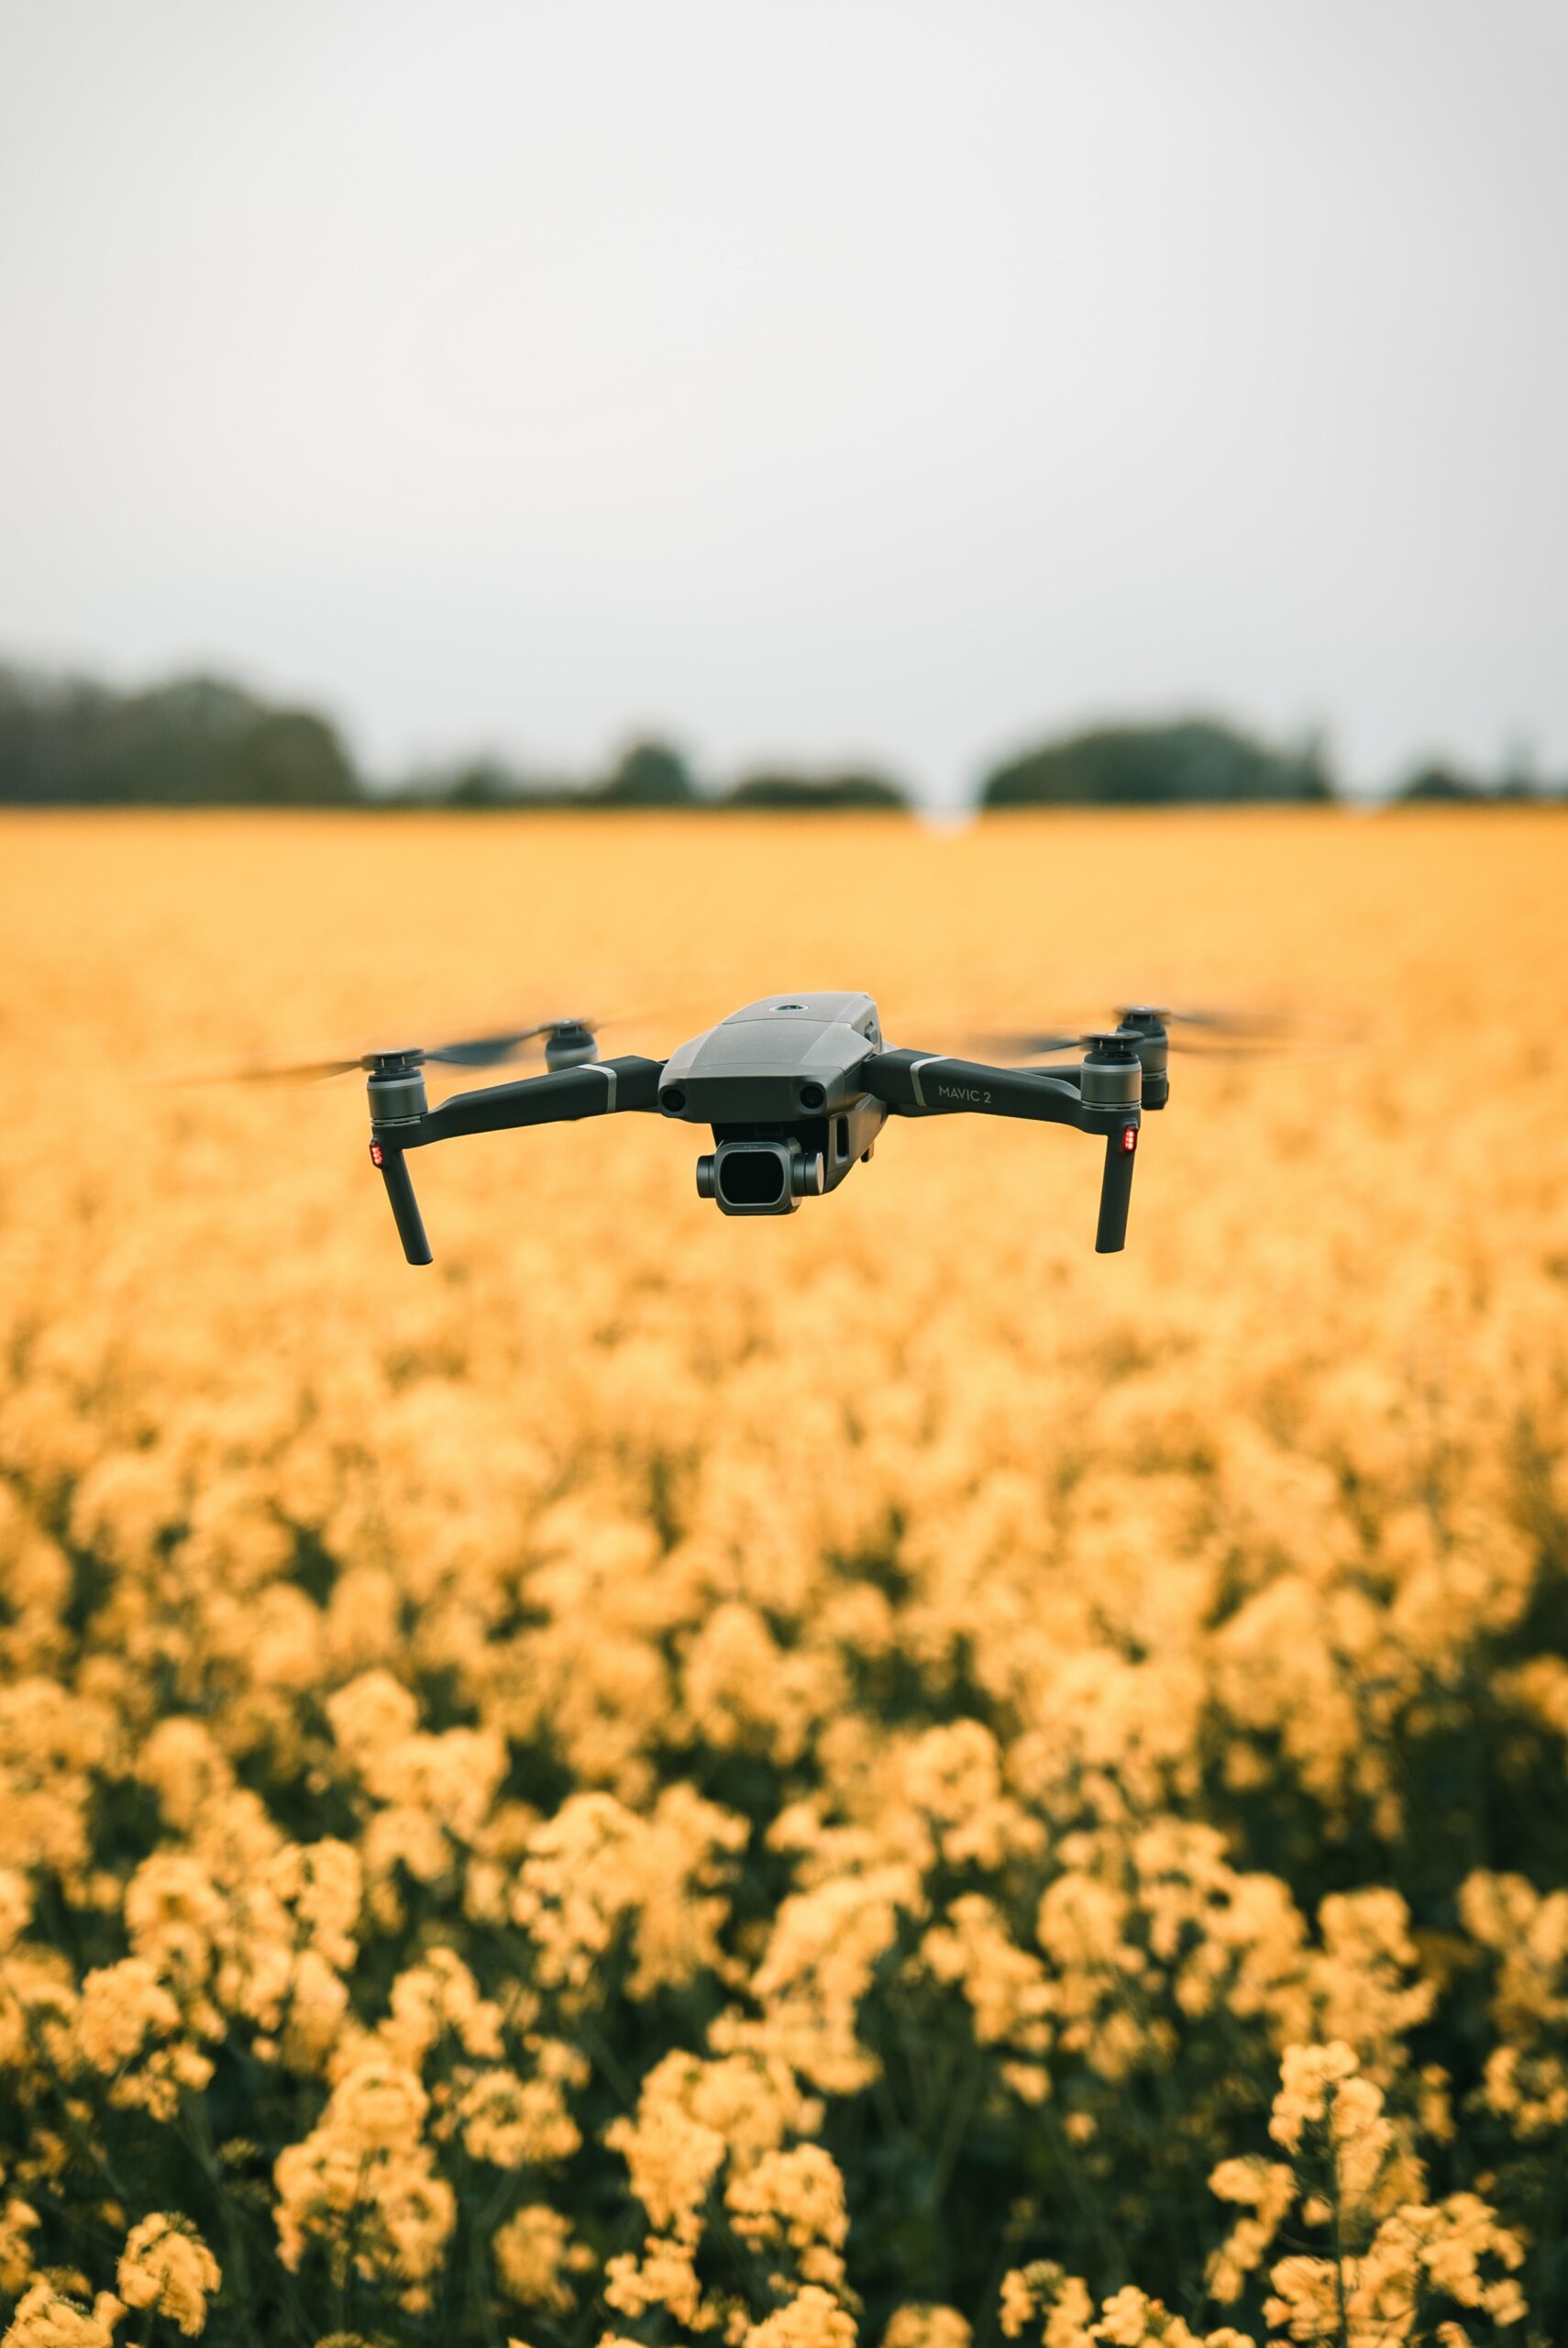 Il drone con fotocamera: uso non solo militare, ma anche ricreativo e civile